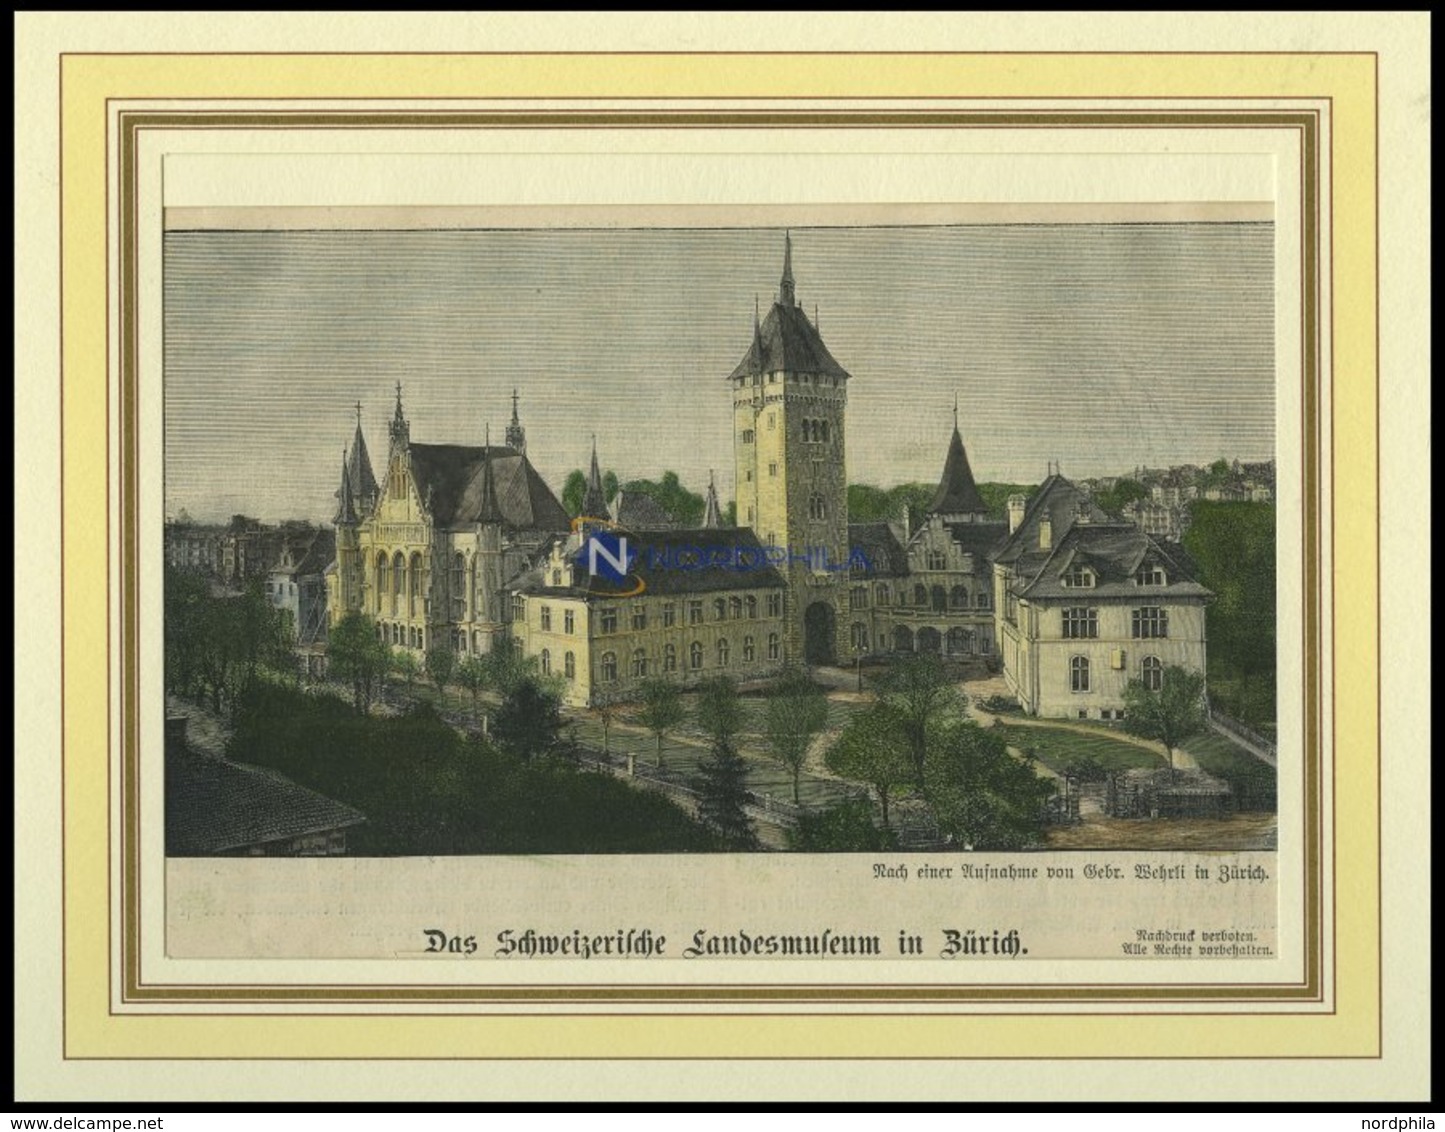 ZÜRICH: Das Landesmuseum, Kolorierter Holzstich Von 1898 - Litografía